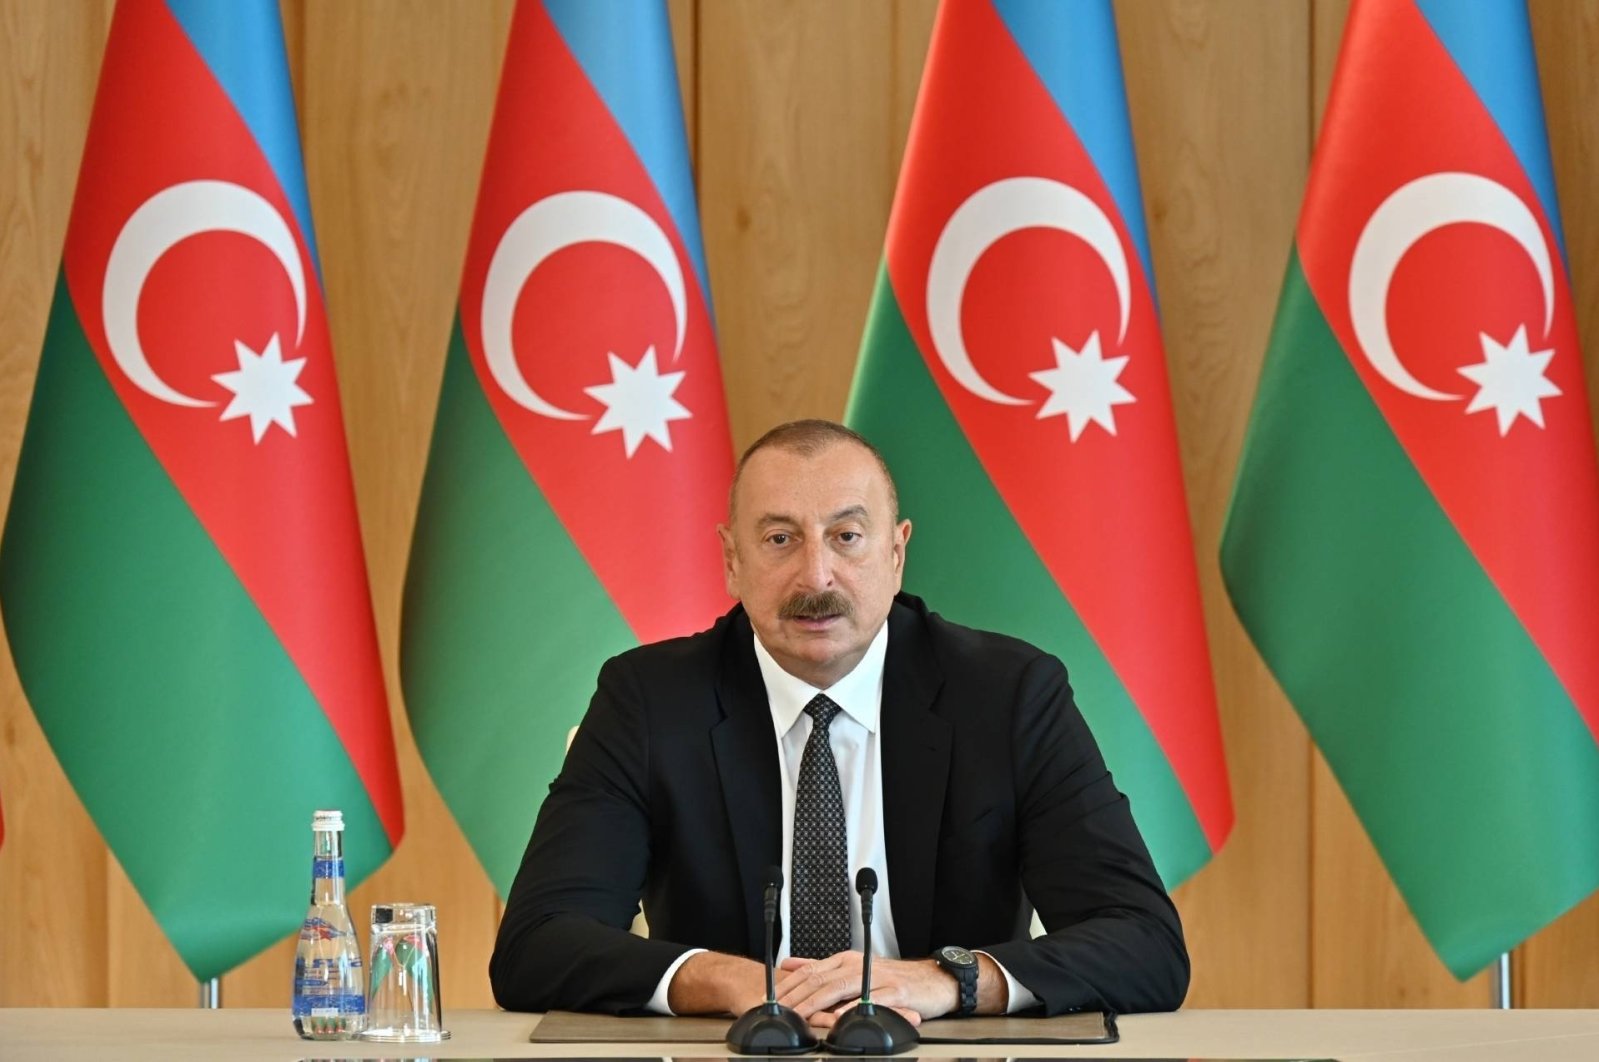 Türkiye is not alone: Azerbaijani President Aliyev